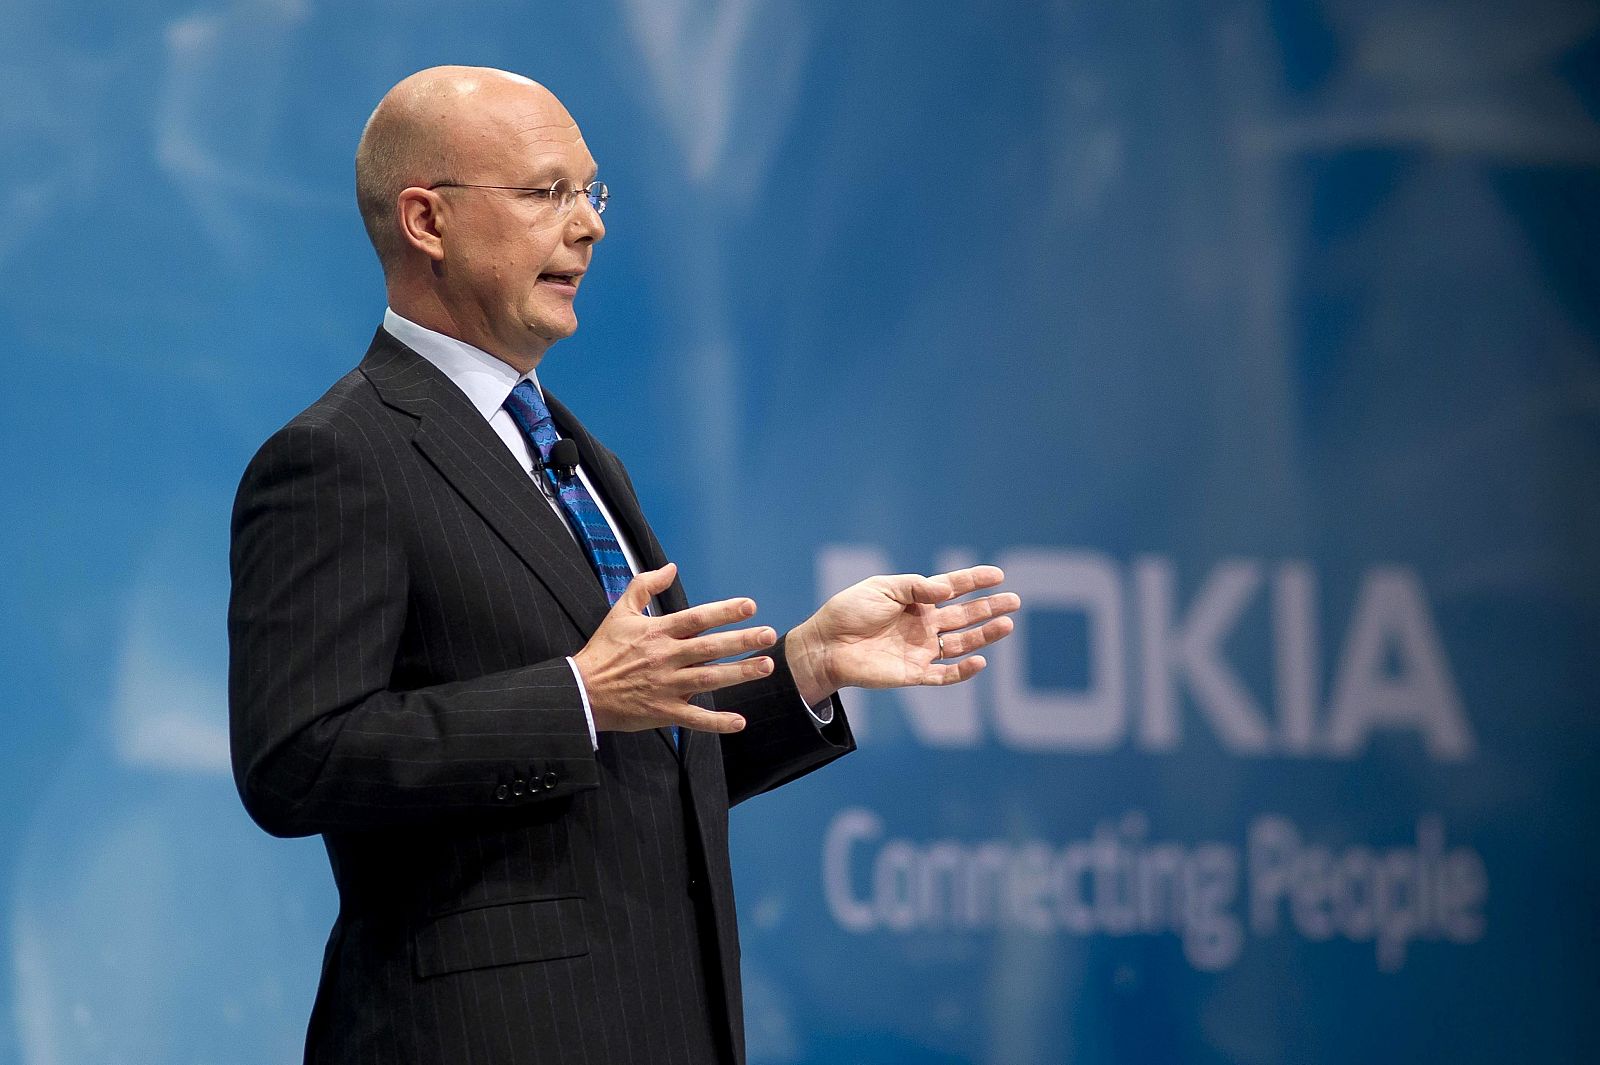 El presidente interino de Nokia, Timo Ihamuotila, pronuncia un discurso en la junta extraordinaria de accionistas